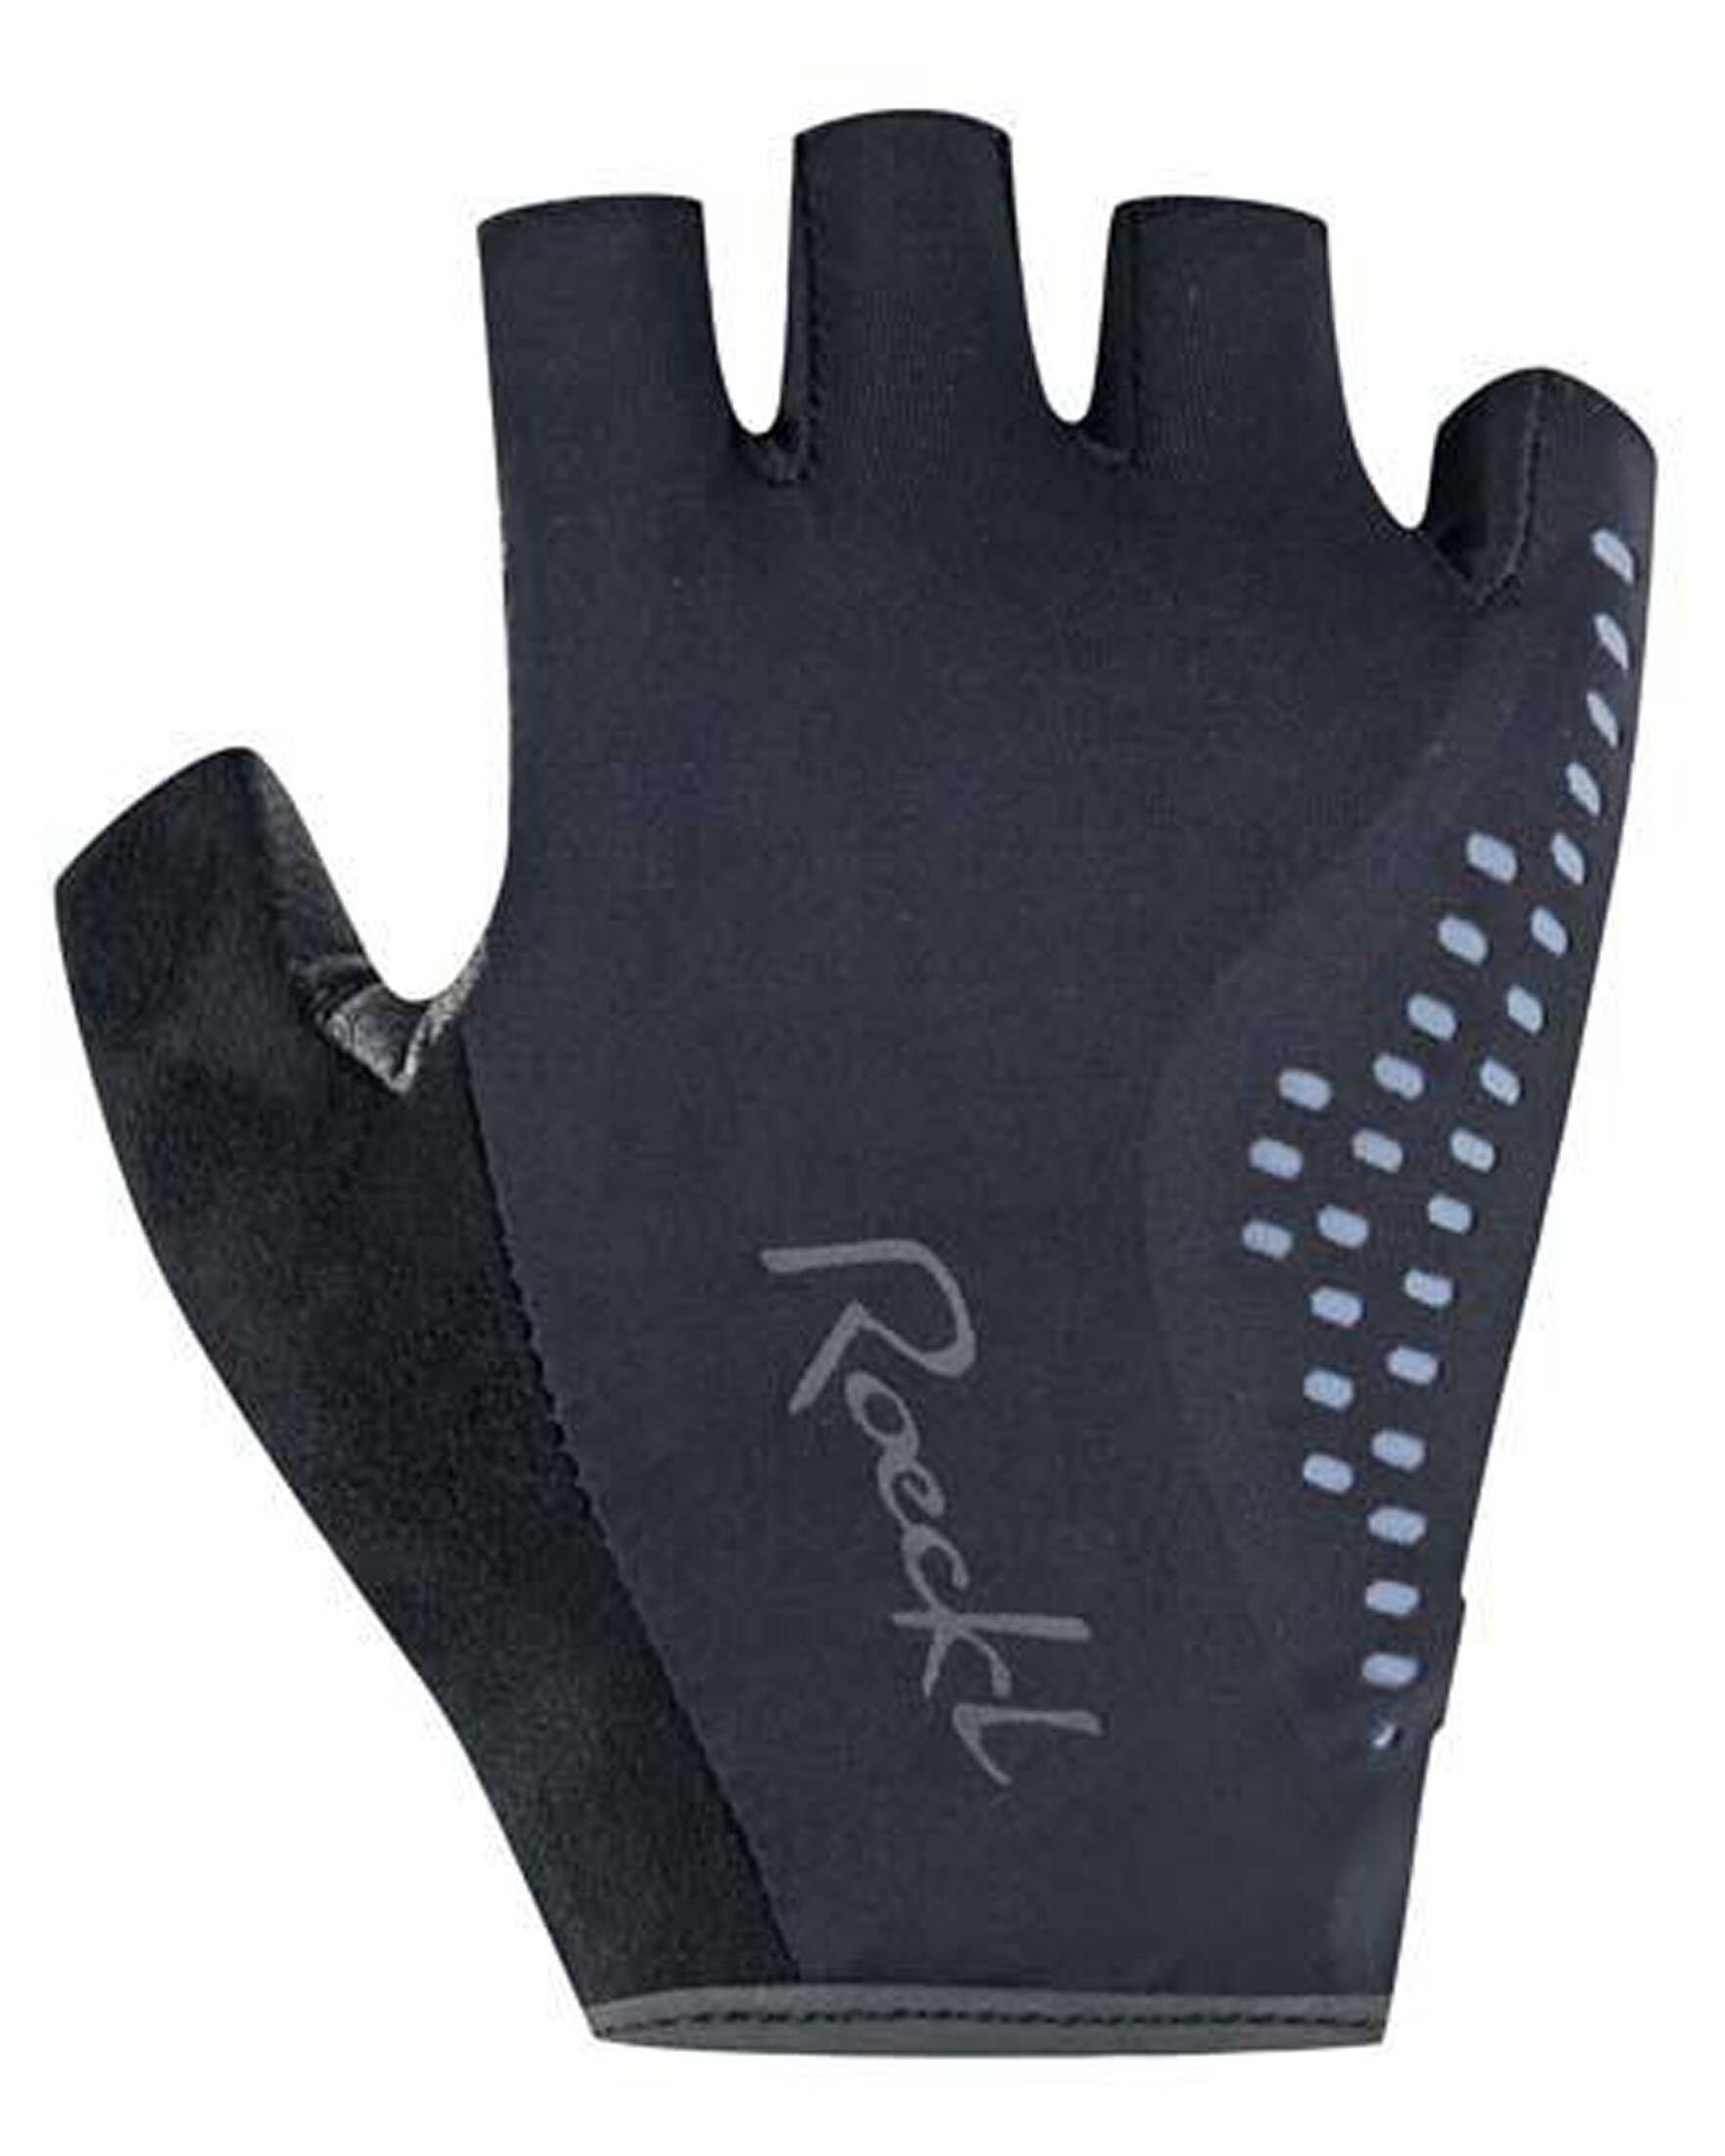 Damen Roeckl Radsport Handschuhe SPORTS Fahrradhandschuhe DAVILLA (200) schwarz